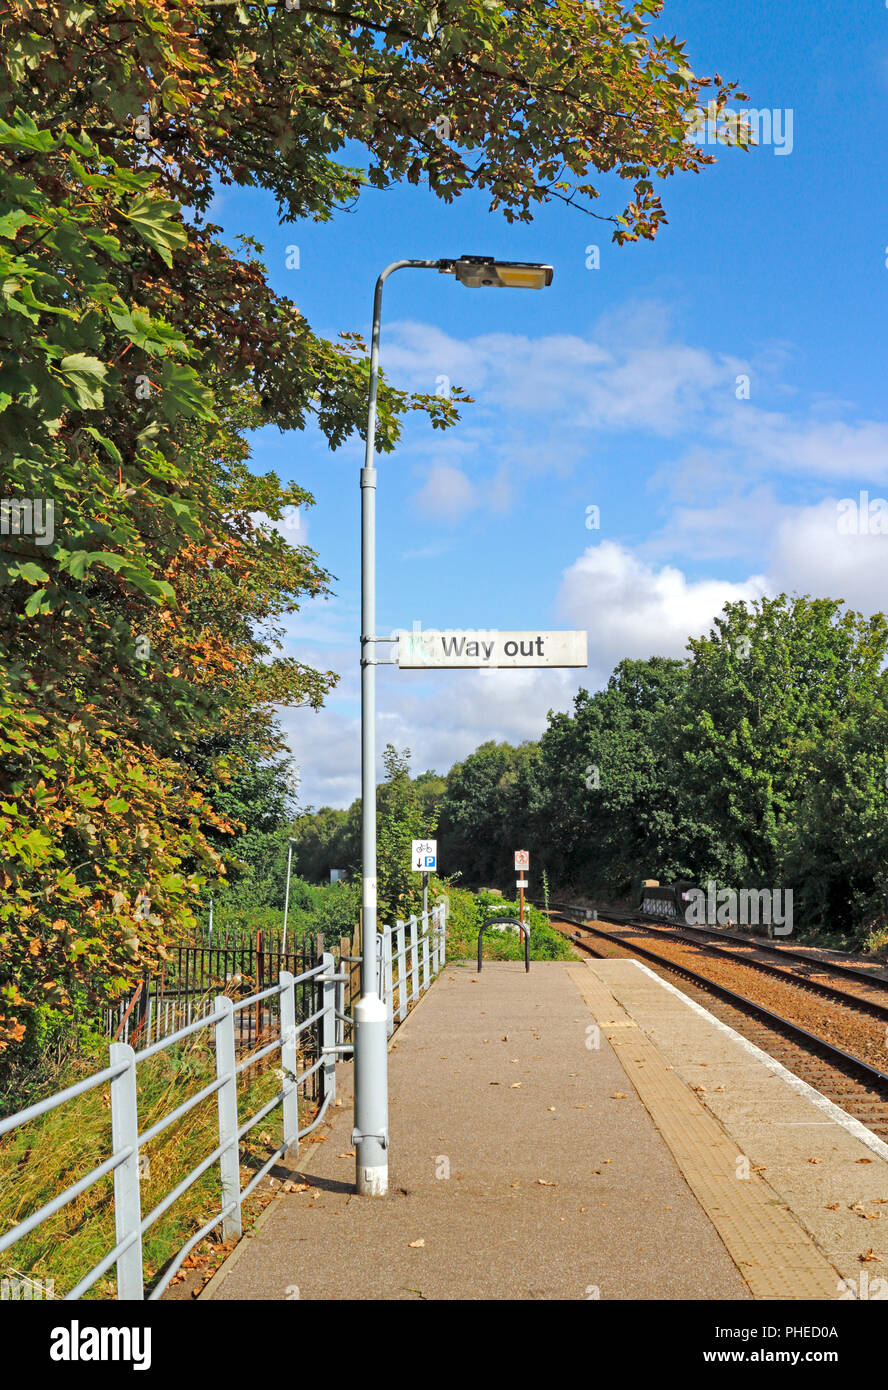 Un moyen de sortir signe sur une plate-forme à la gare sans pilote à North Walsham, Norfolk, Angleterre, Royaume-Uni, Europe. Banque D'Images